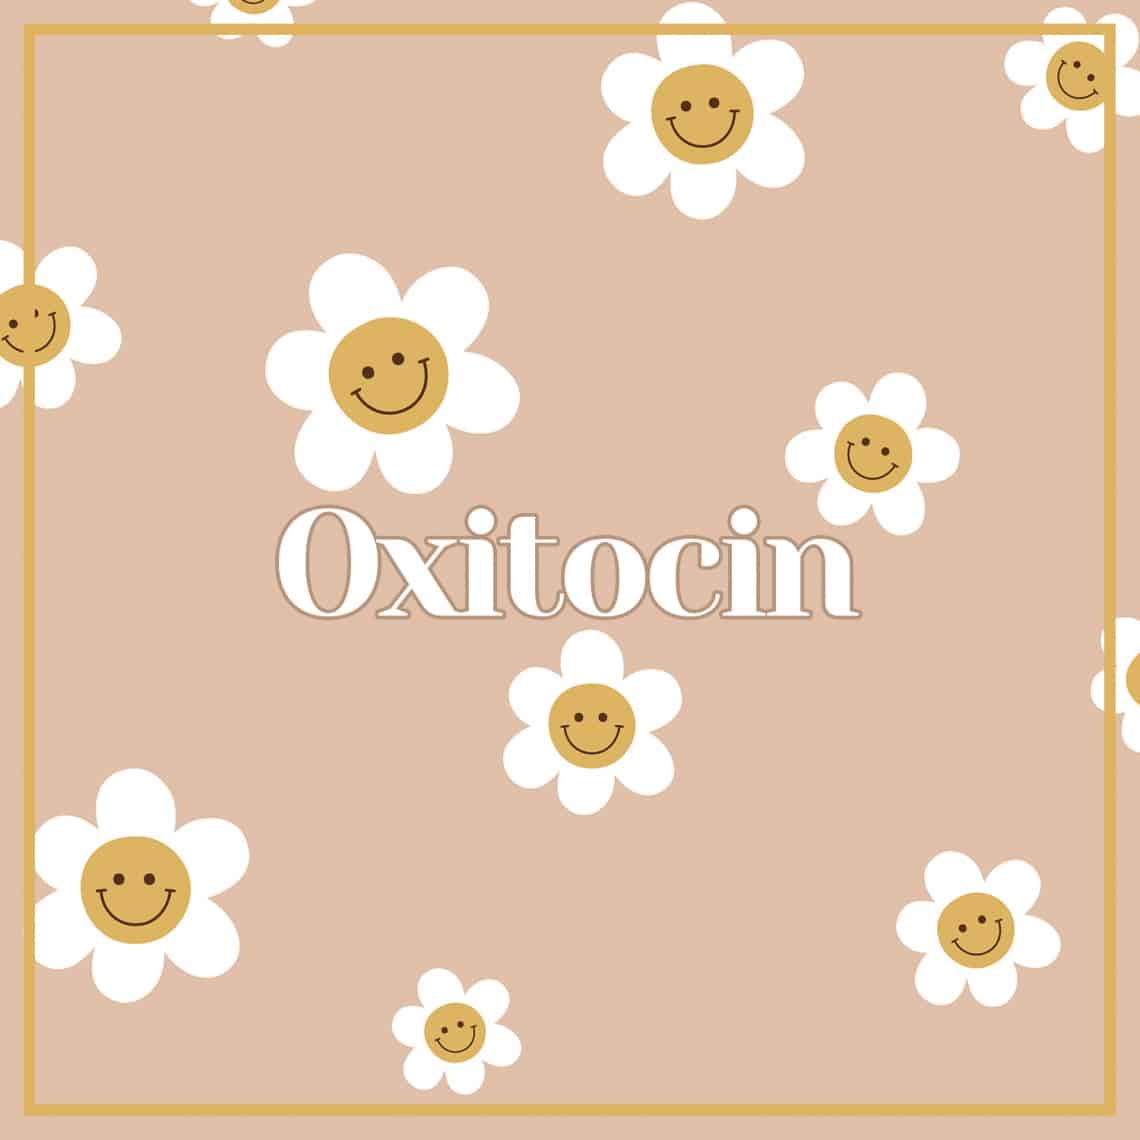 Oxitocin